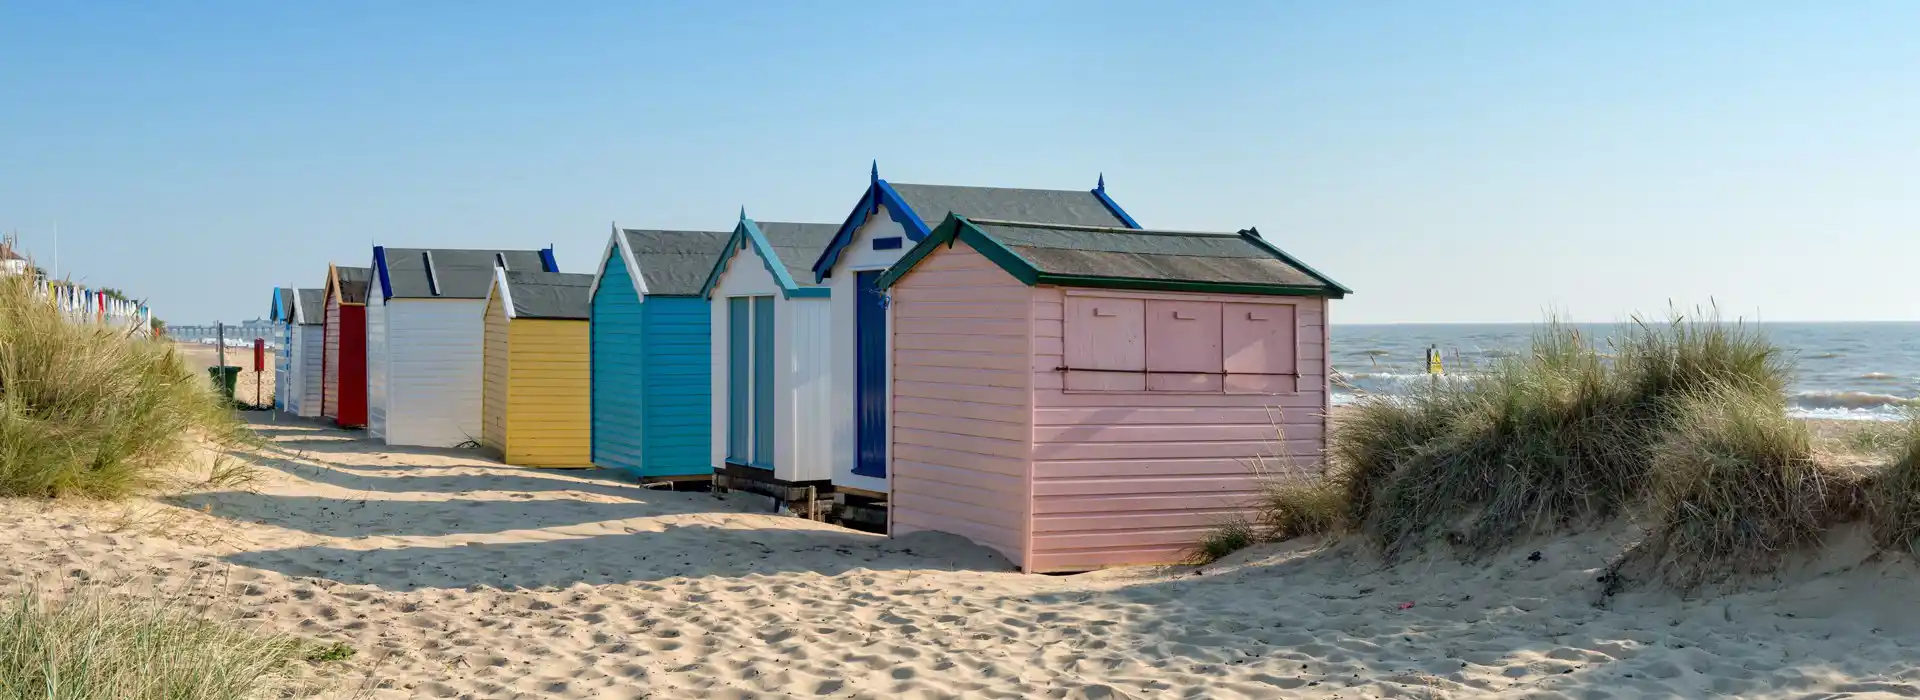 Best coastal campsites in the UK